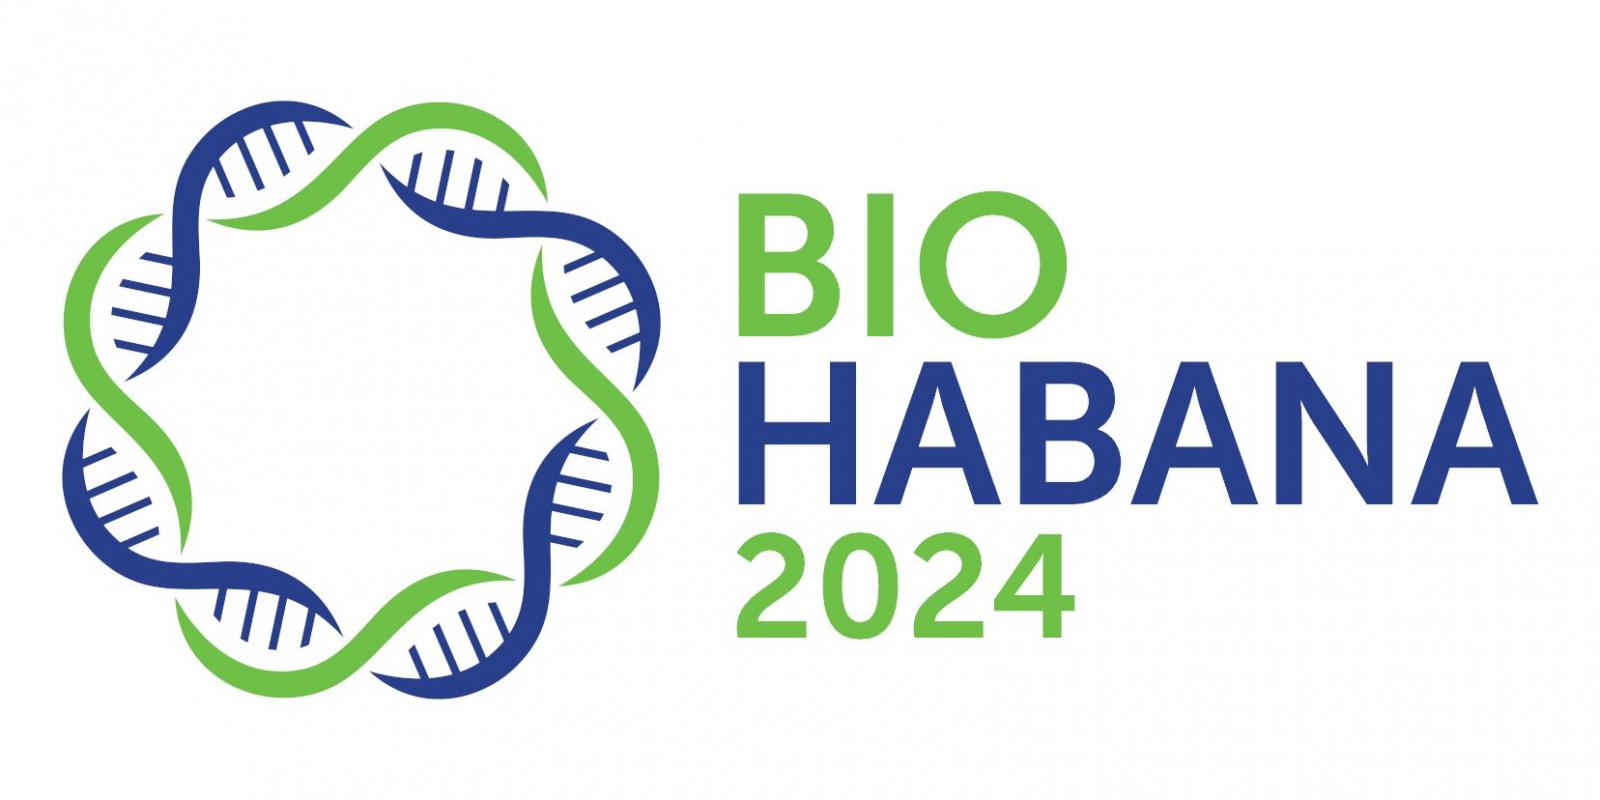 BioHabana 2024 